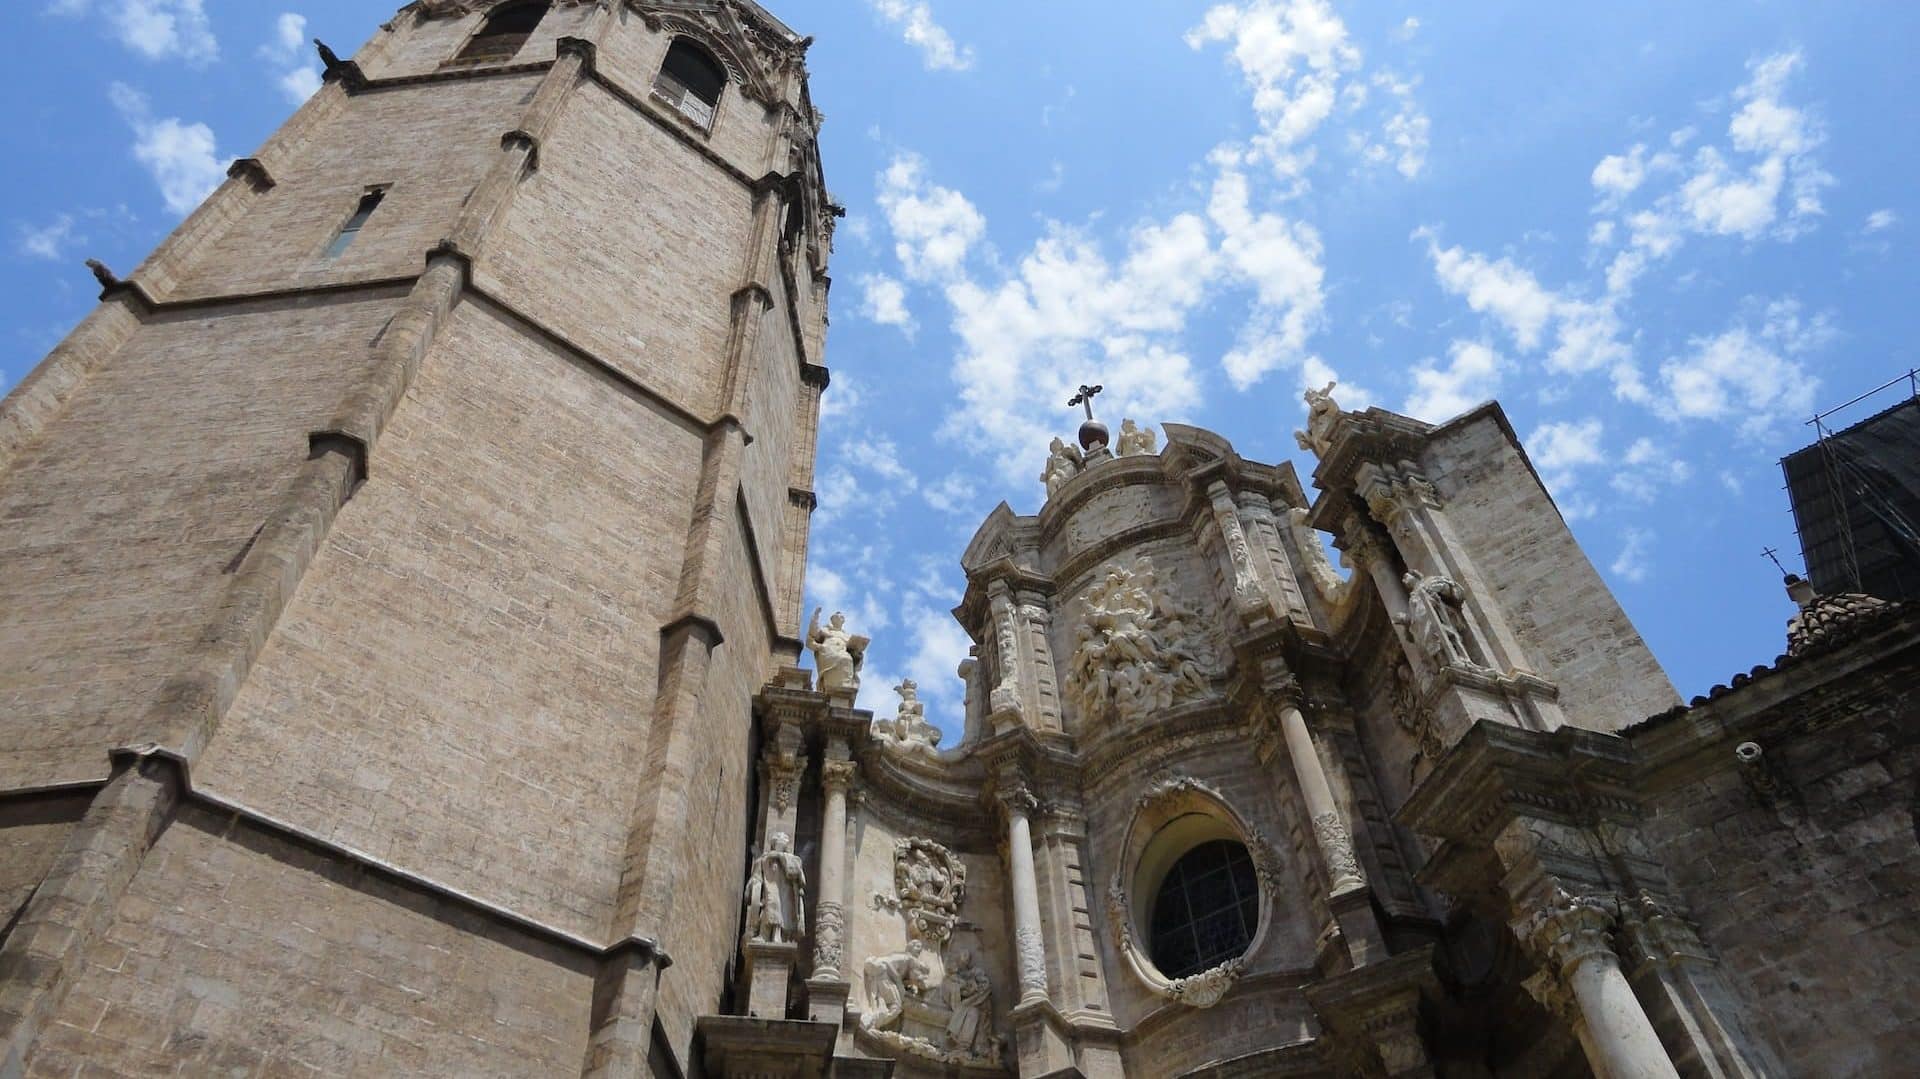 Atraccions com la Catedral fan de Ciutat Vella una de les millors zones per allotjar-se a València